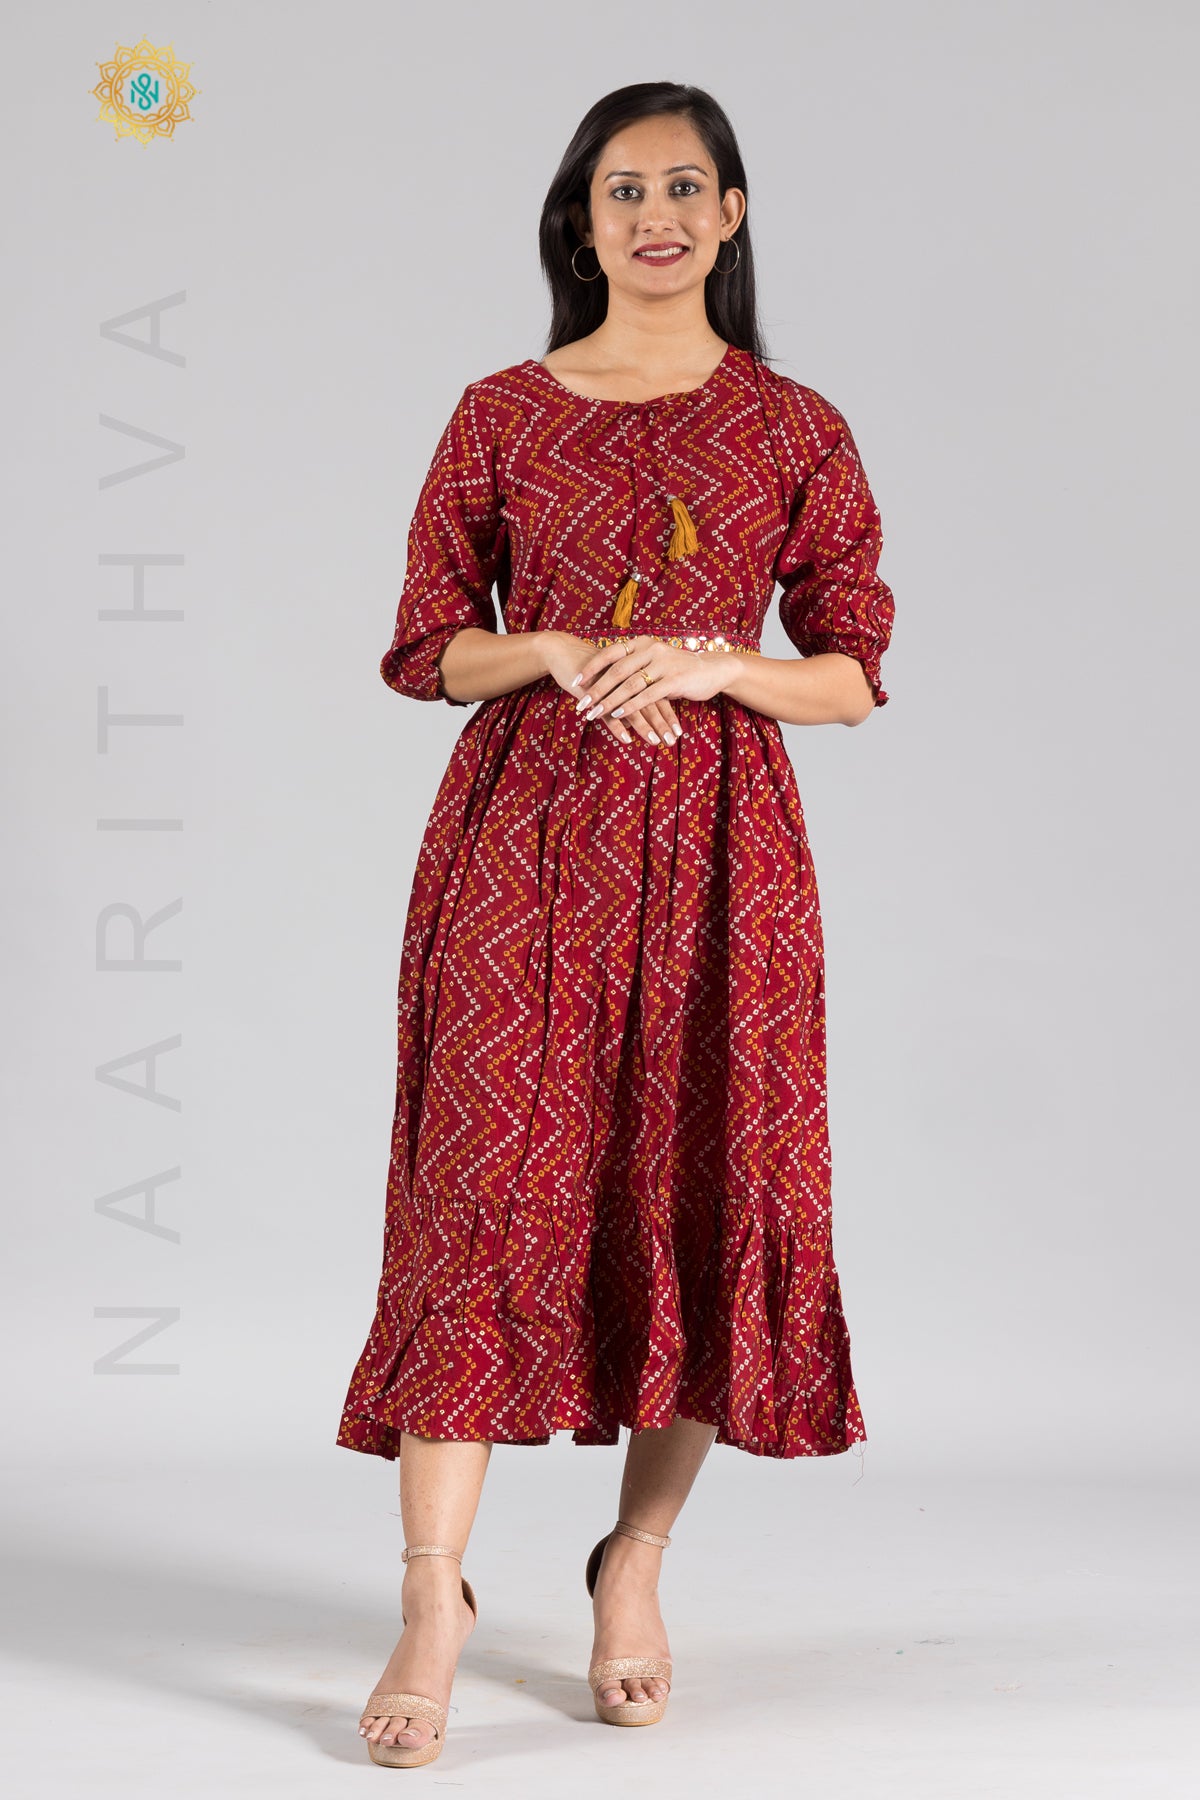 Aarraa by UmaAnand - Customised high low kurti with white umbrella skirt..  #partywear #casualwear #ethnicwear #indianethnicwear #designerwear  #instafashion #instafashionista #aaraabyumaanand | Facebook